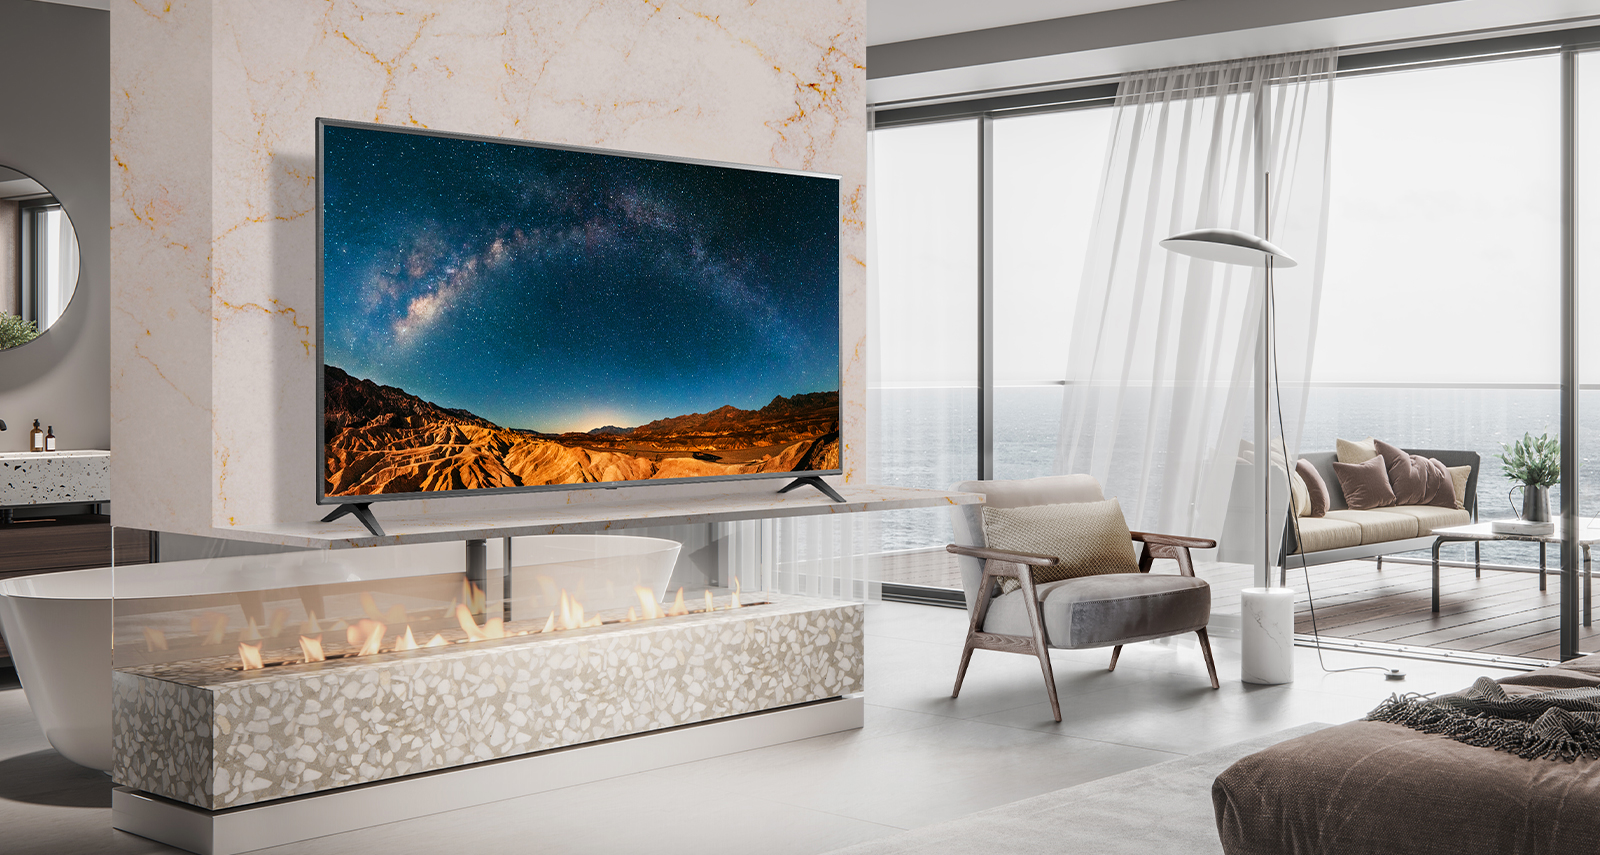 У простий спальні з видом на море на стіні полиці встановлений телевізор.  На екрані телевізора вид на синє море здається яскравим та чітким.